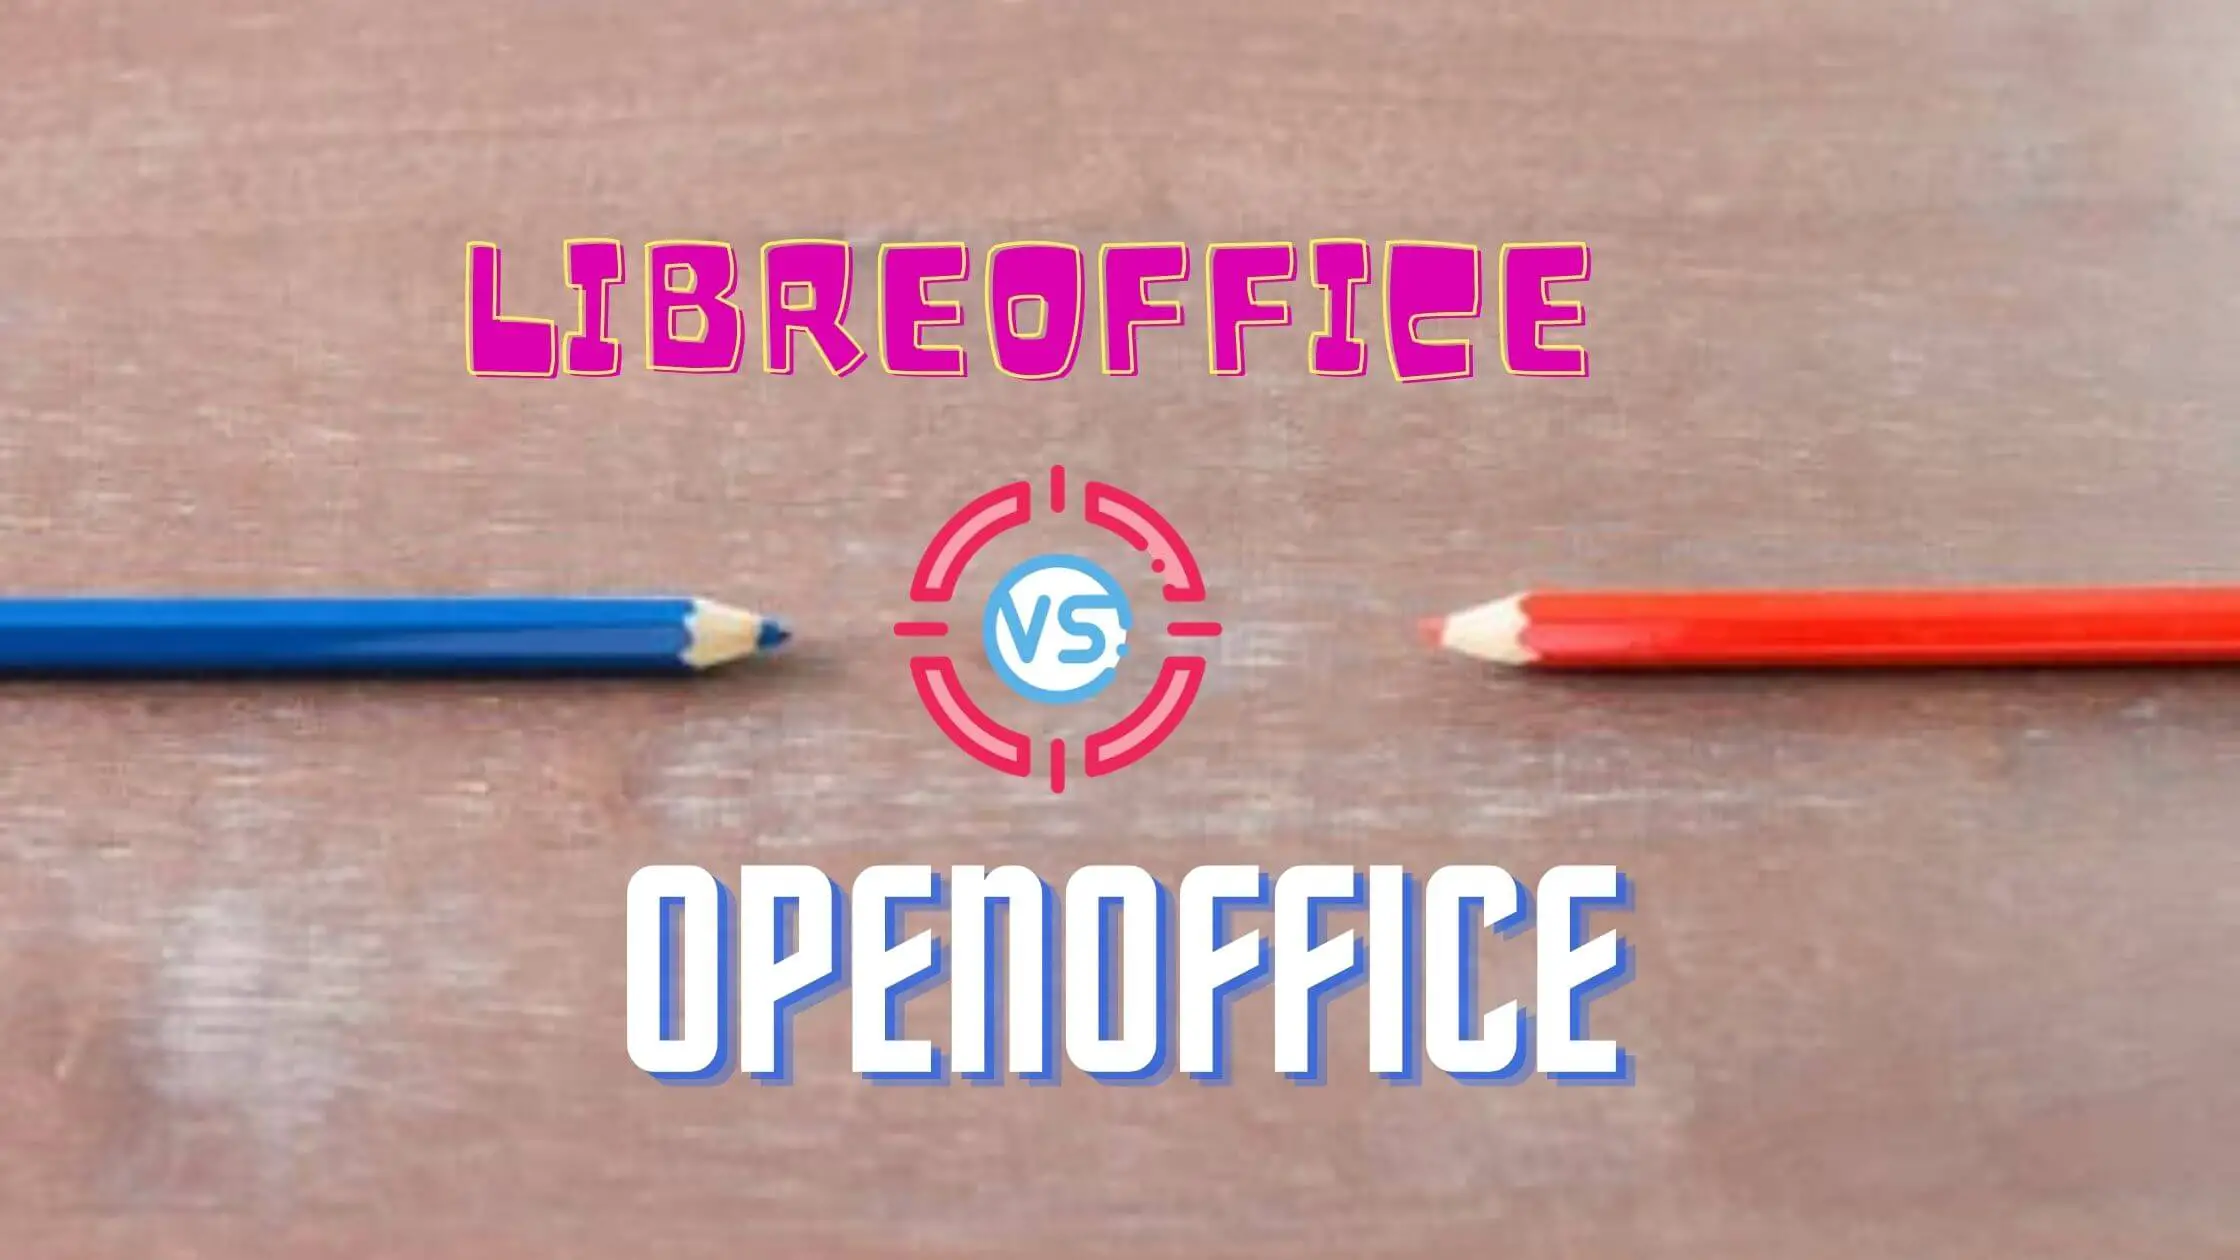 2017 openoffice vs libreoffice vs msoffice